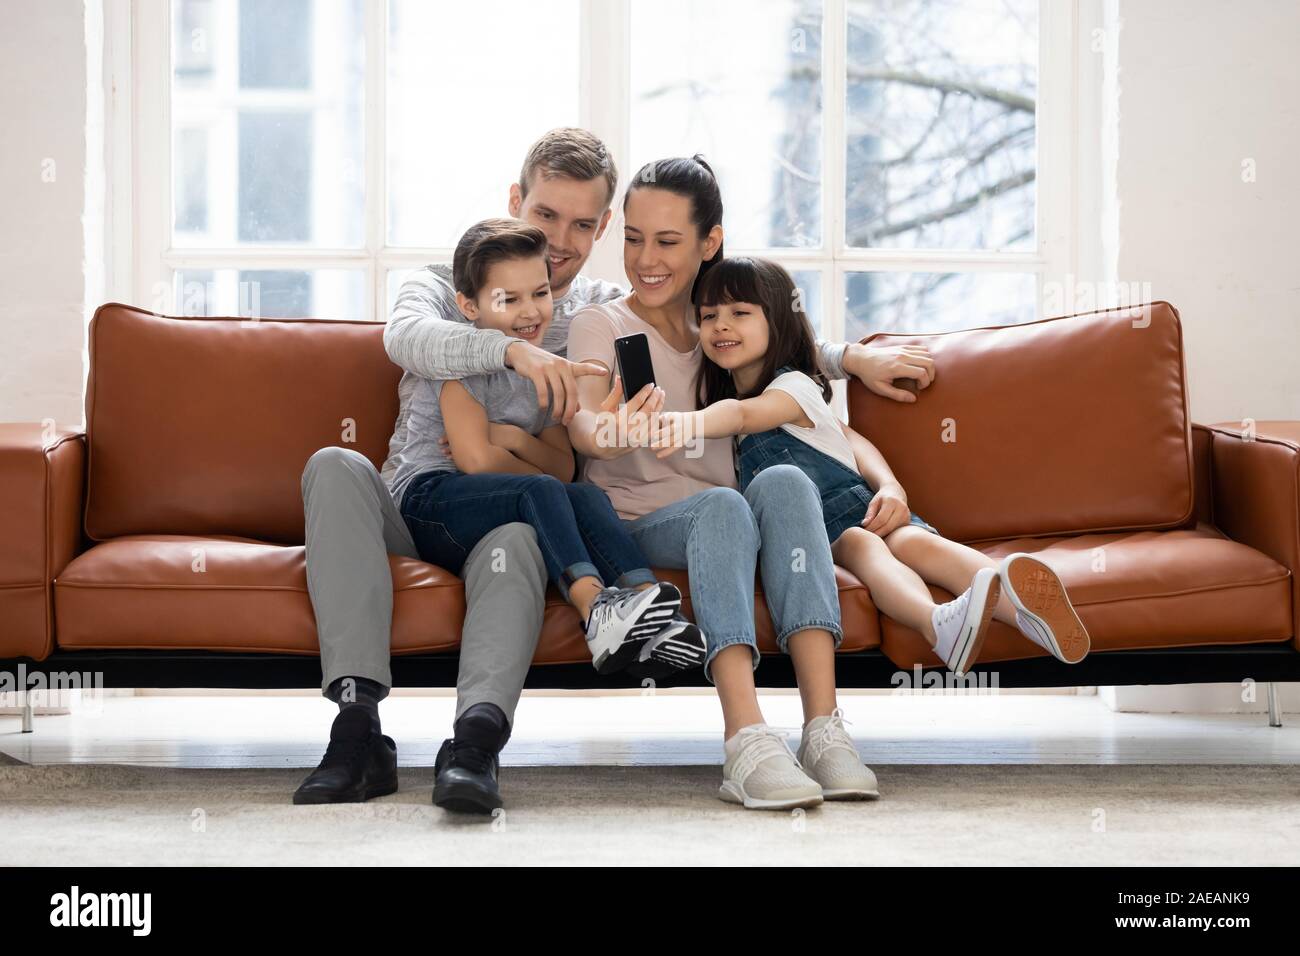 Famille heureuse avec deux enfants ayant un bon moment à l'aide de votre smartphone. Banque D'Images